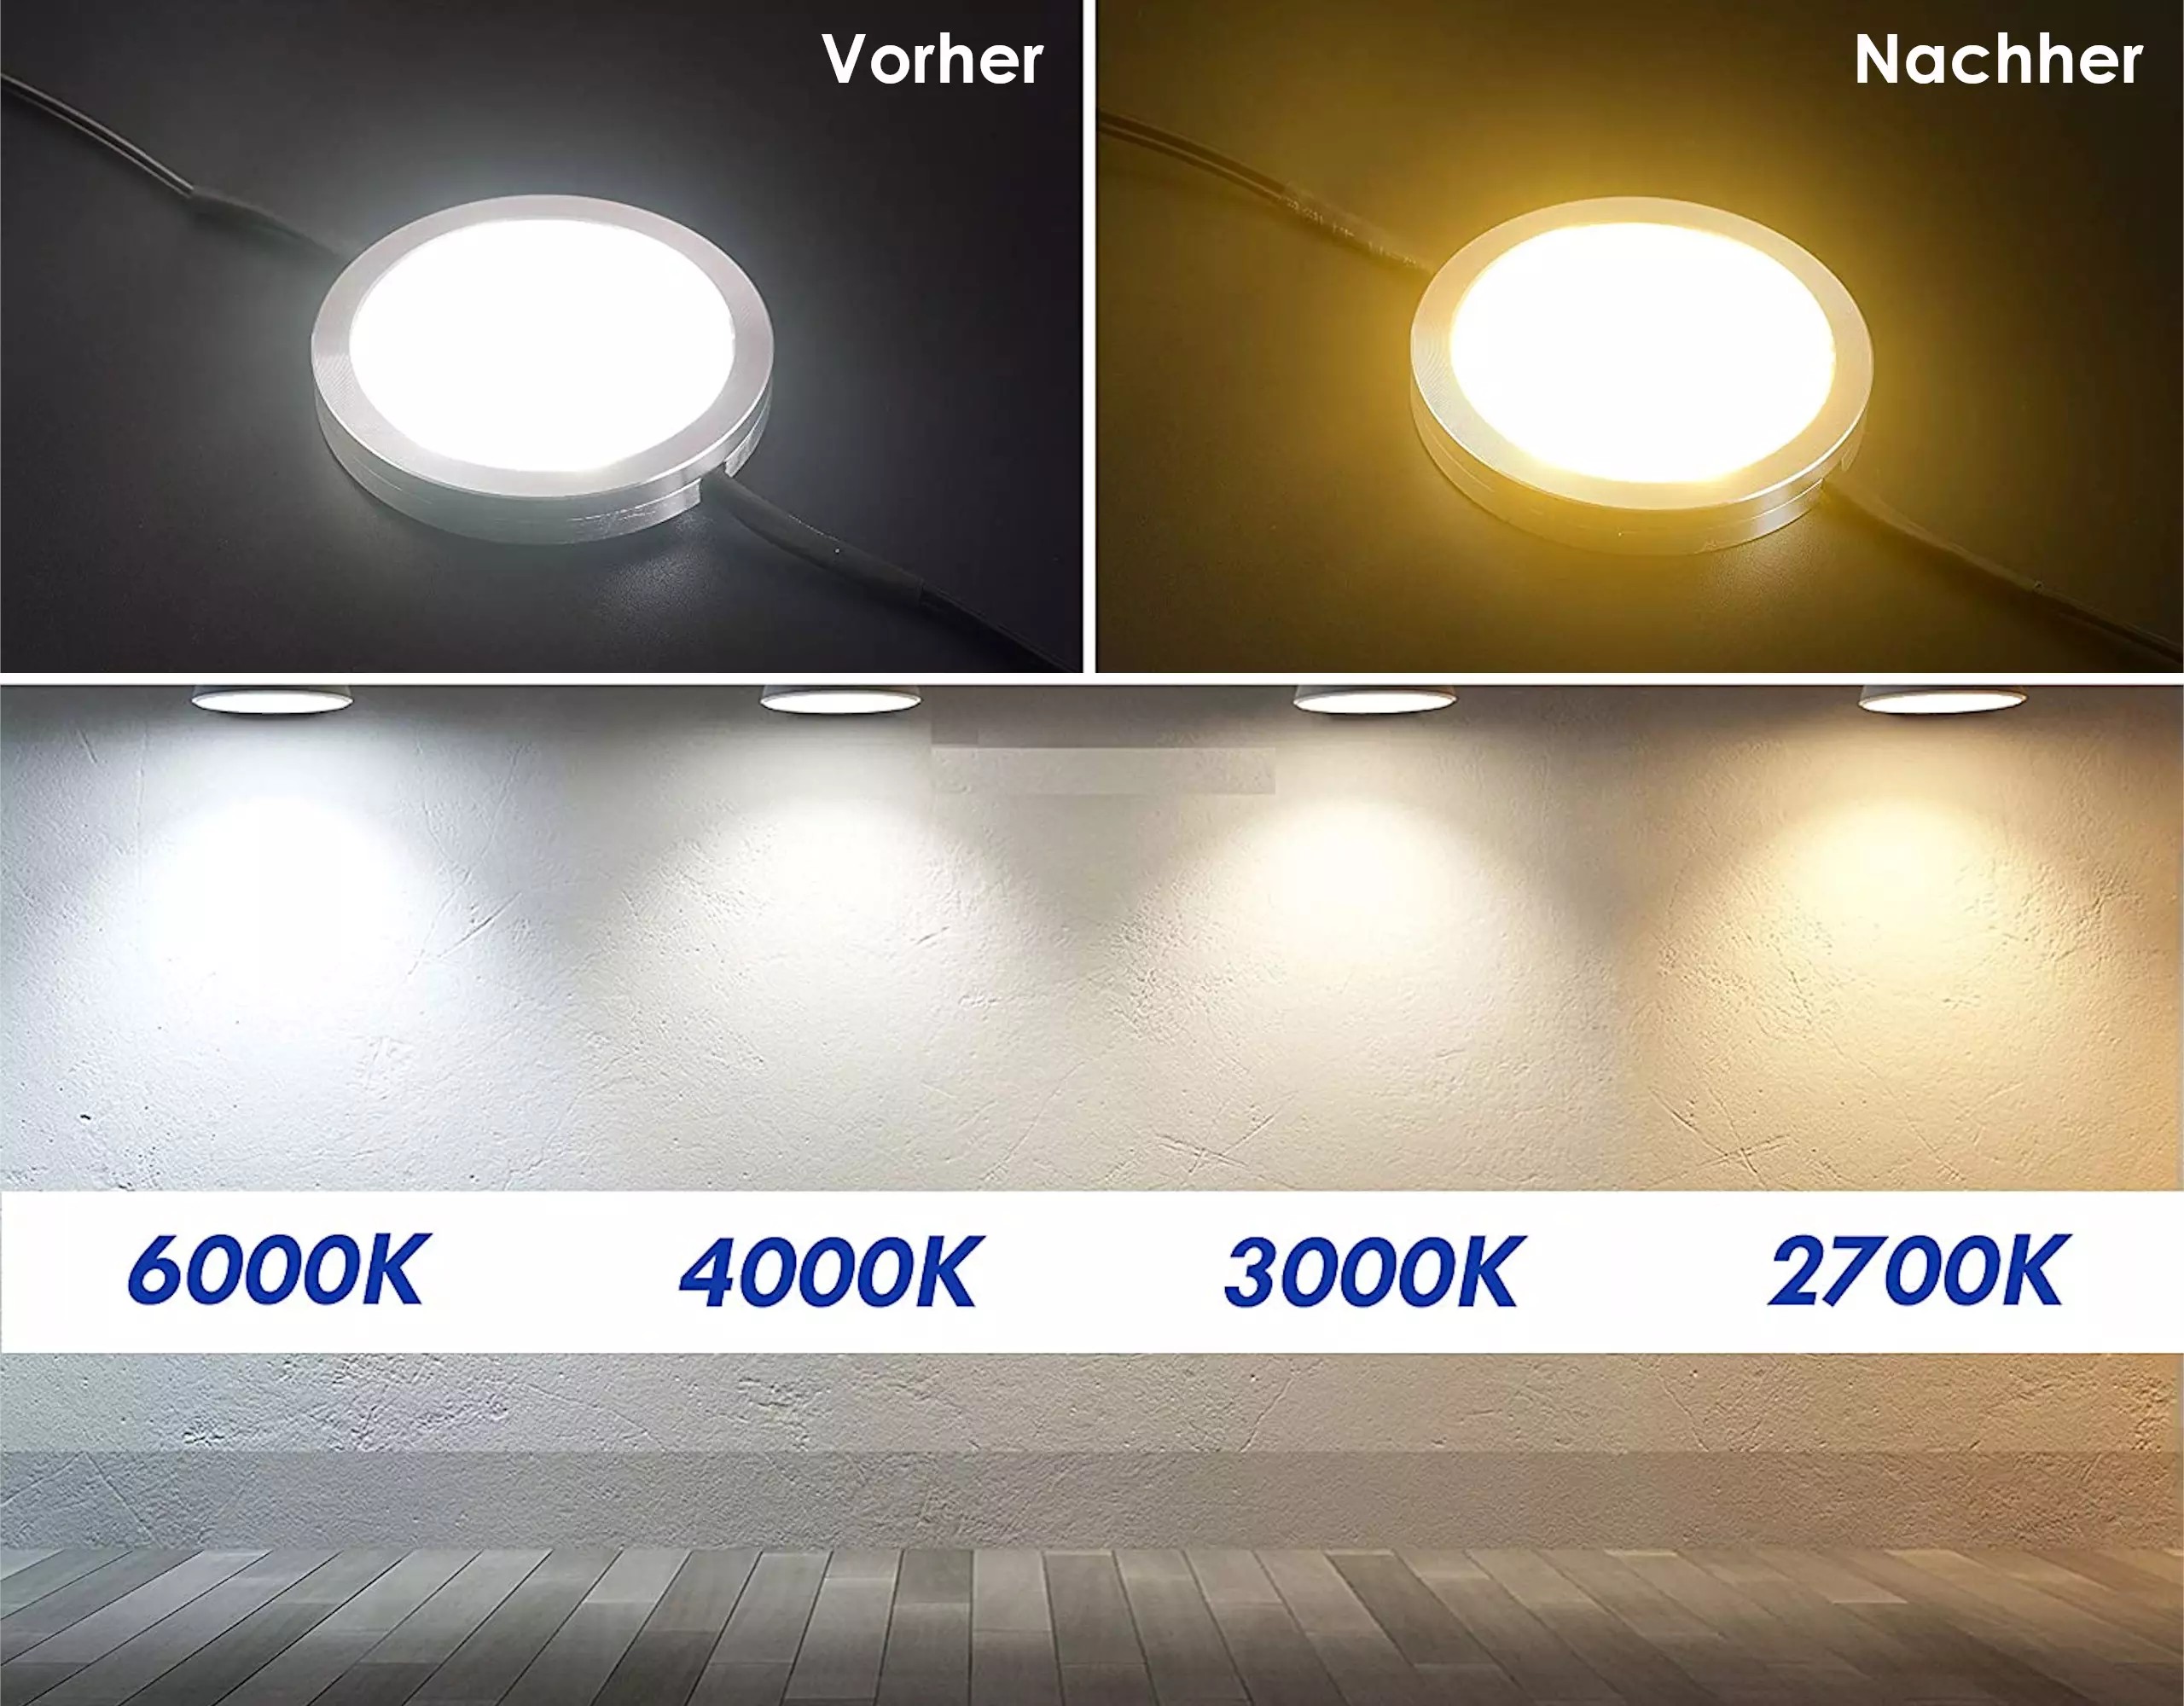 Films couleur autocollants pour lampes LED, ⌀8 CM découpe circulaire, blanc chaud filtres couleur pour la correction des couleurs, lumière du jour à lumière incandescente, set de filtres avec 9 pièces